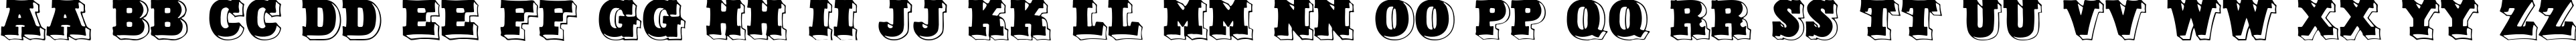 Пример написания английского алфавита шрифтом Duo Dunkel